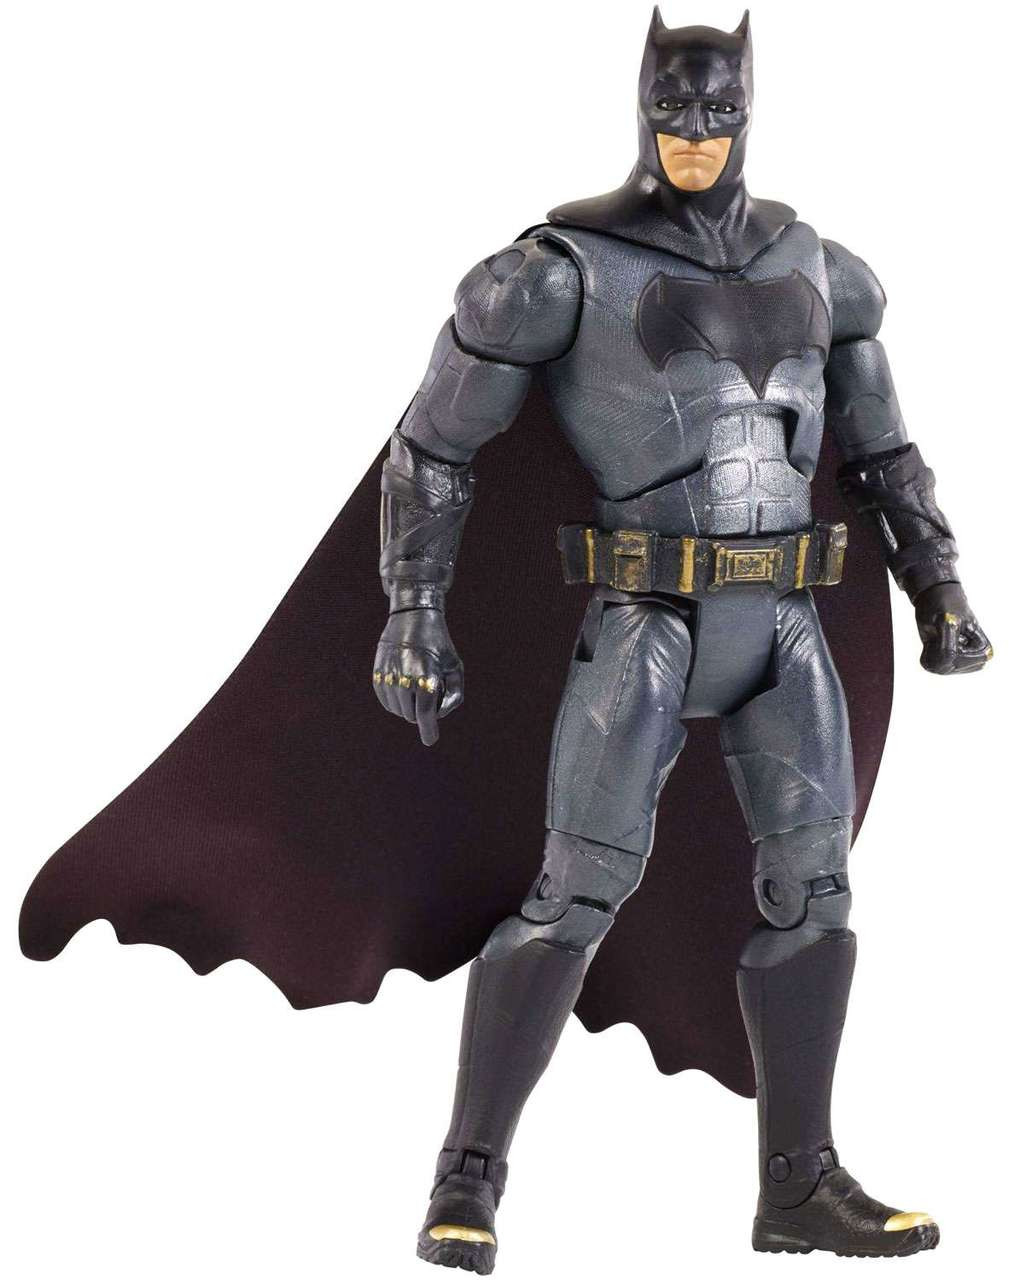 DC Justice League Movie Multiverse Batman Action Figure Mattel Toys ...